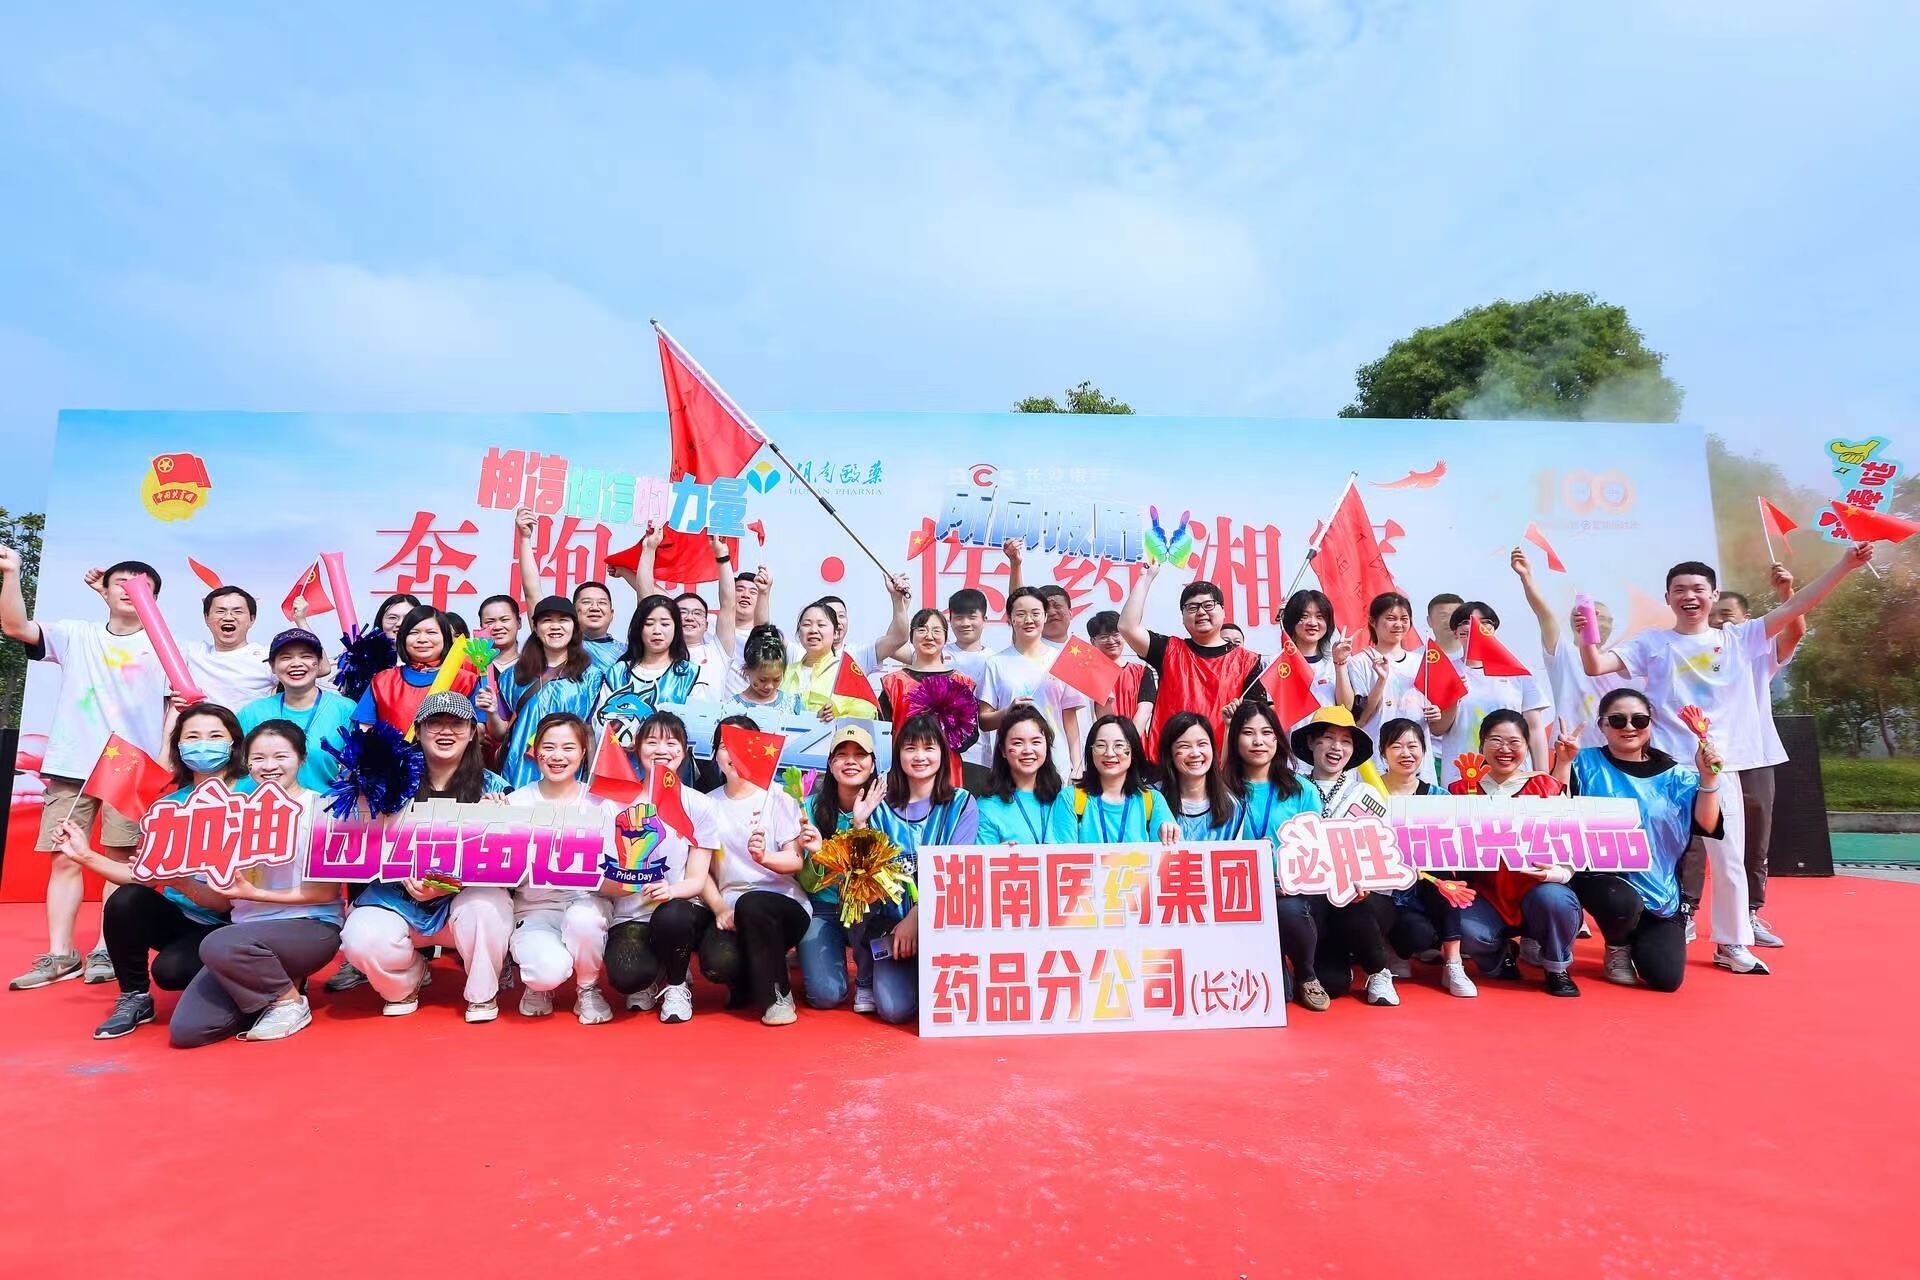 “奔跑吧·医药湘军”快乐彩跑活动日前吸引了近200名青年职工参加。